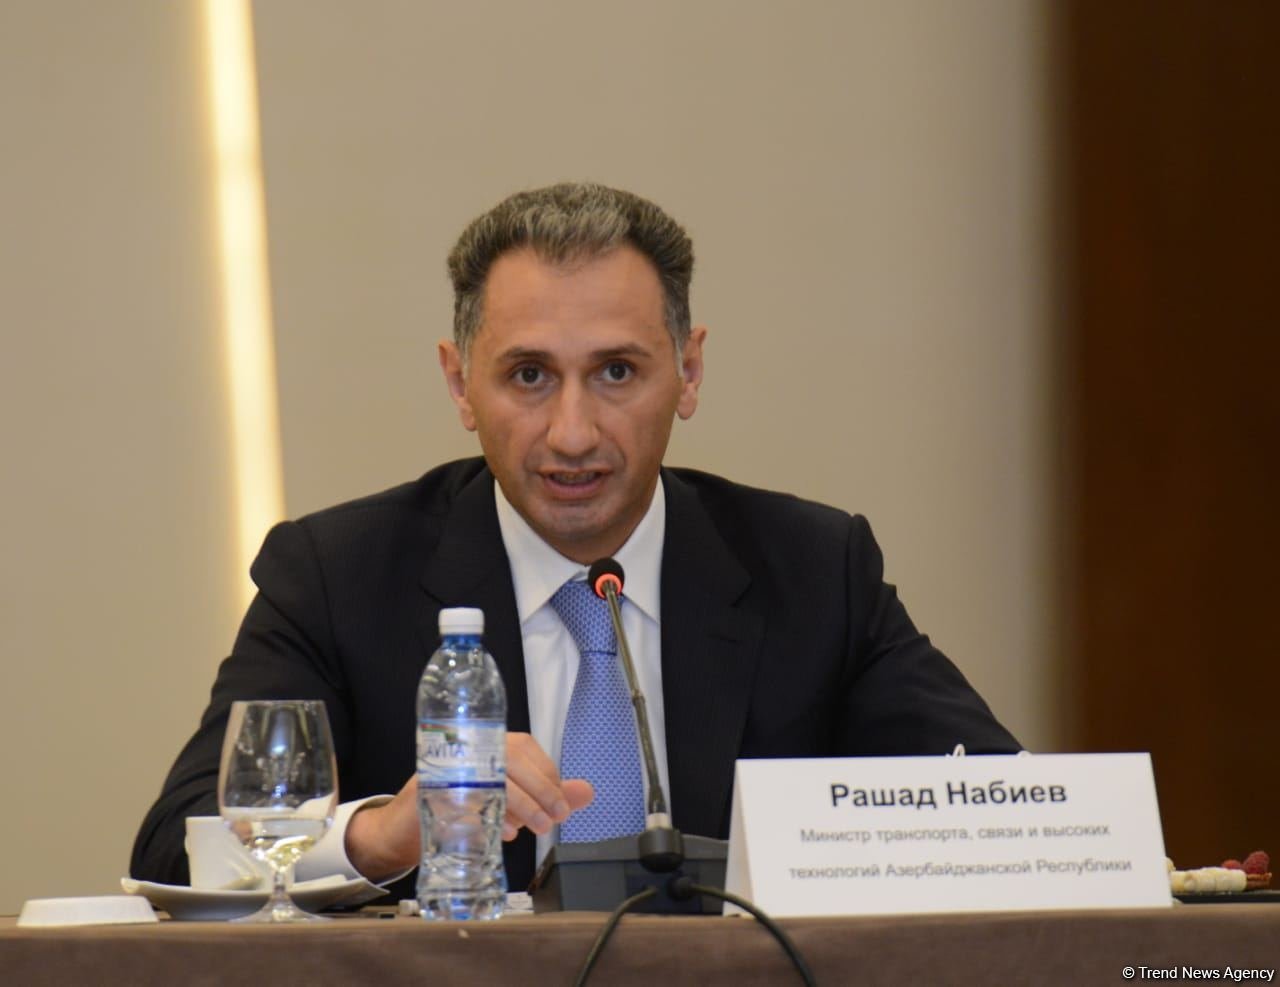 Азербайджан готов применить опыт американских компаний в сфере «умных технологий» - министр